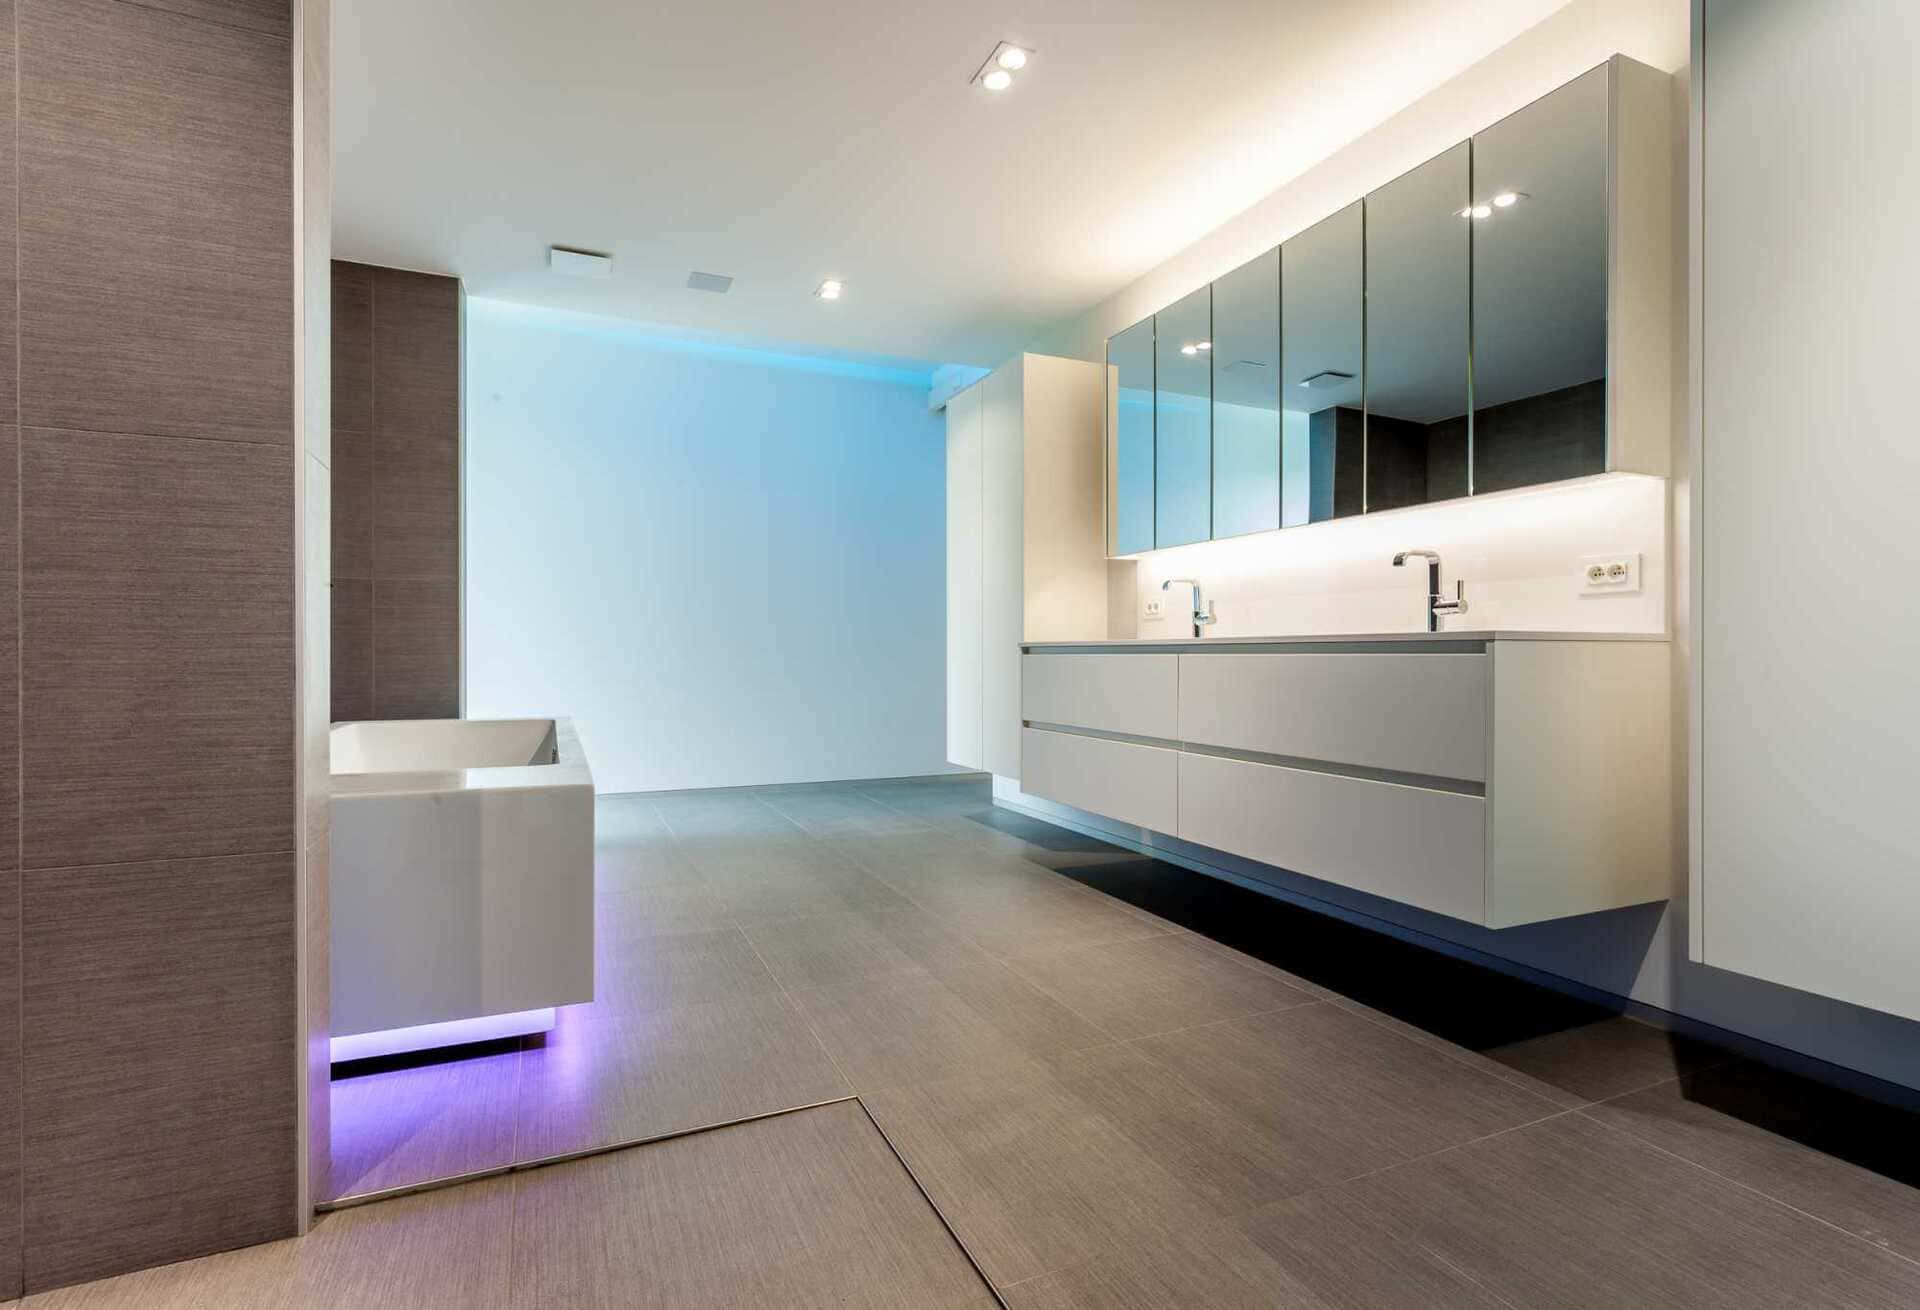 De badkamer is de plaats van totale verwenning: wandverwarming in combinatie met vloerverwarming en zoveel meer … Een juweeltje van pure vakmanschap.